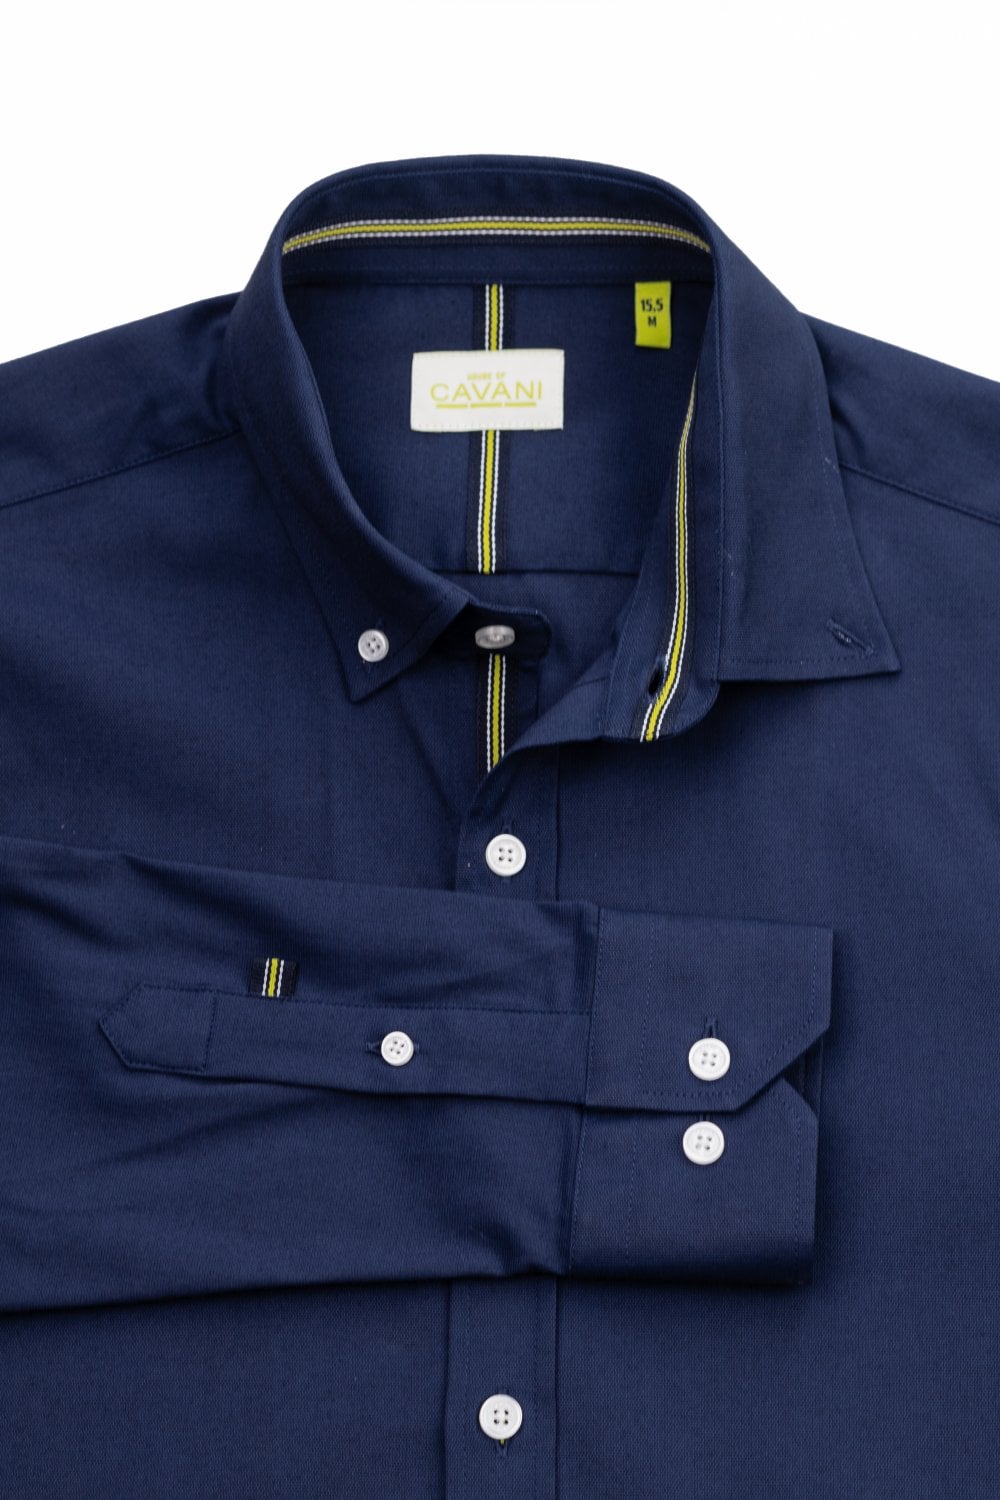 Tessa Navy Cotton Shirt - Shirts - S/14.5 - THREADPEPPER